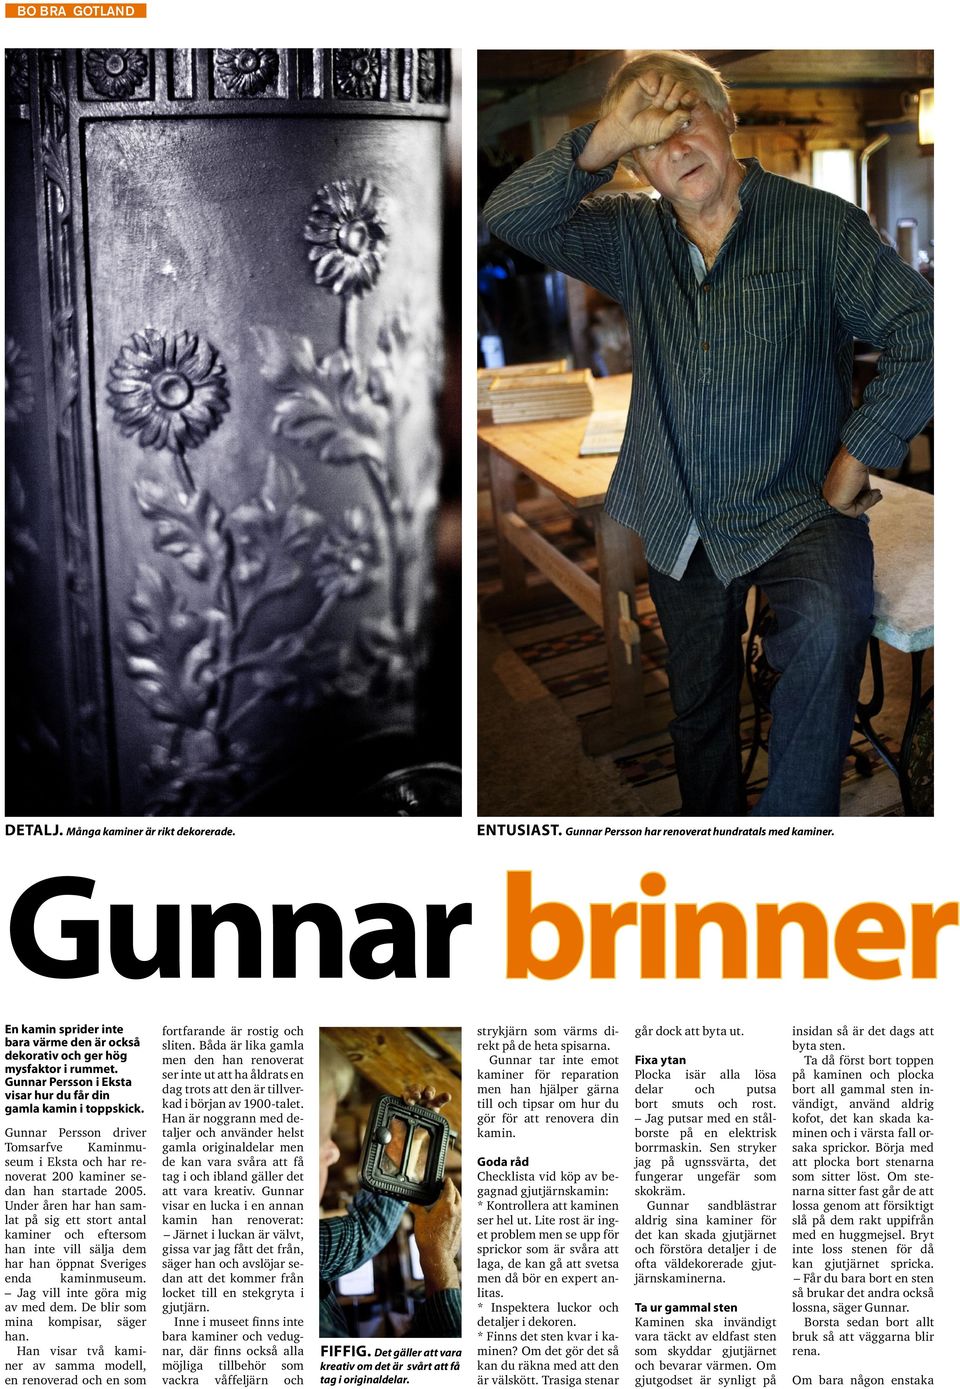 Gunnar Persson driver Tomsarfve Kaminmuseum i Eksta och har renoverat 200 kaminer sedan han startade 2005.